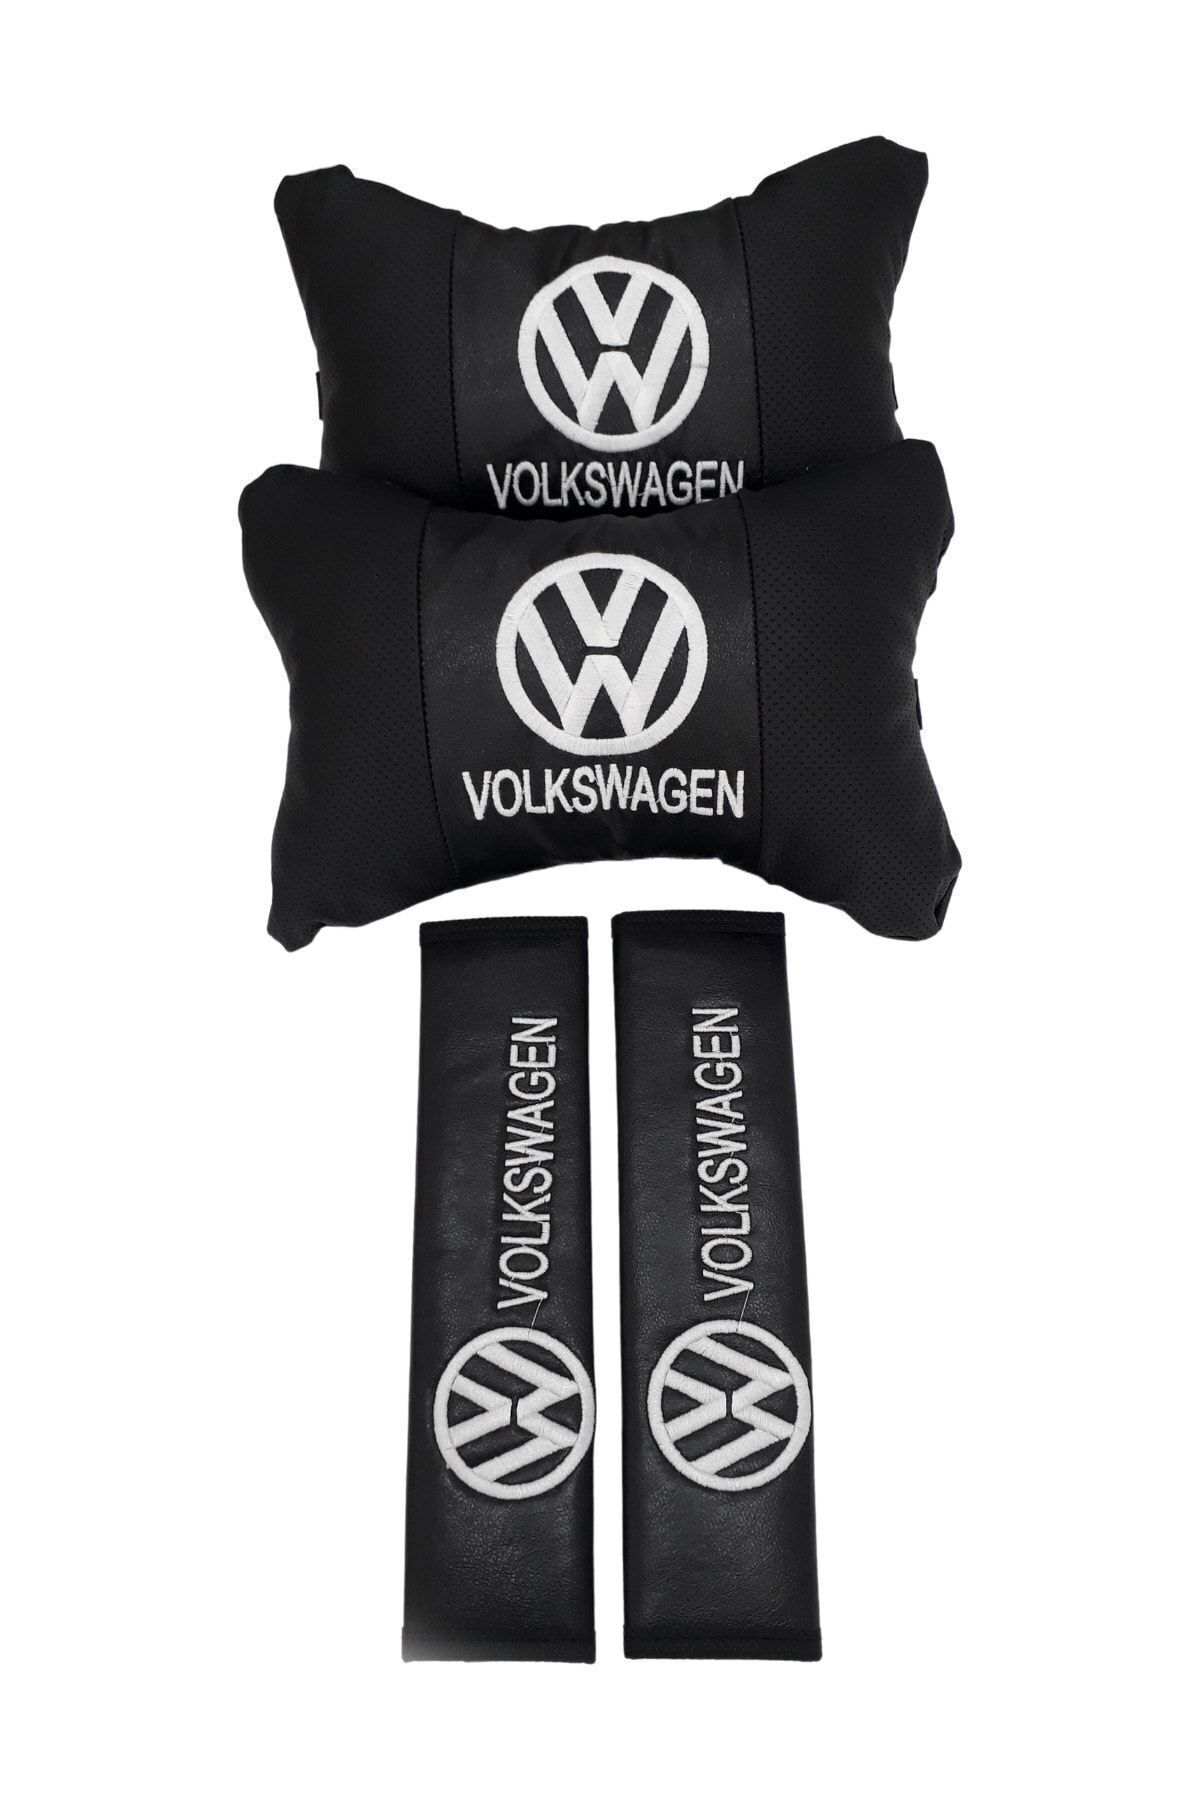 Volkswagen 2'li Ortopedik & Nakışlı Lüks Araç Seyahat Deri Boyun Yastığı / Kemer Pedi Takımı